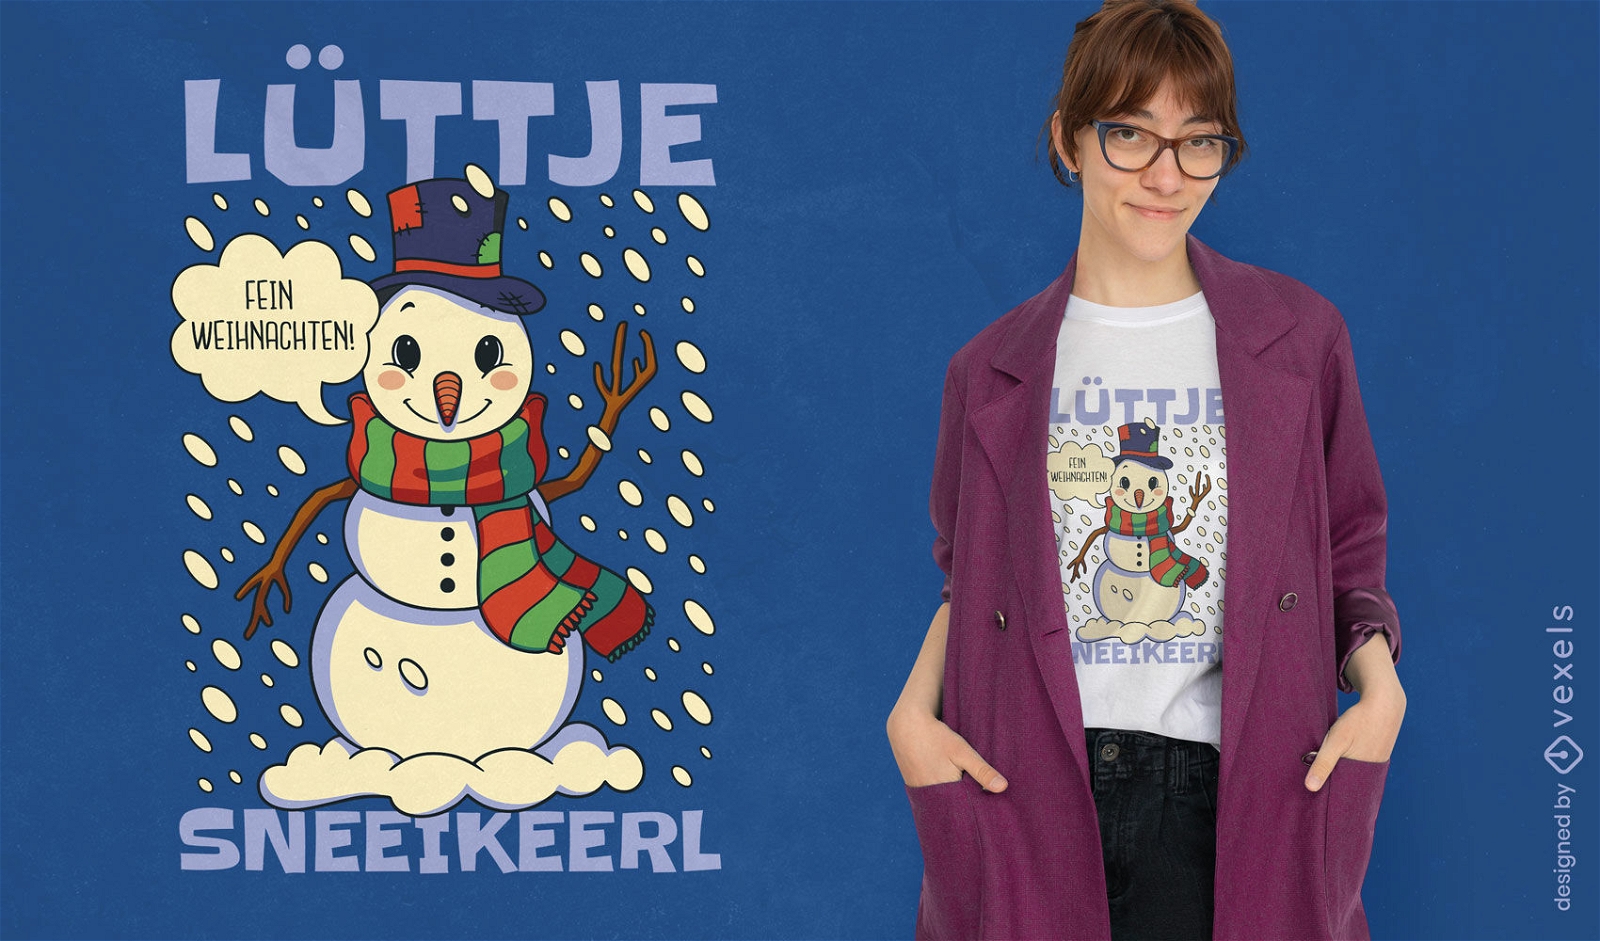 Little snowman kids t-shirt design